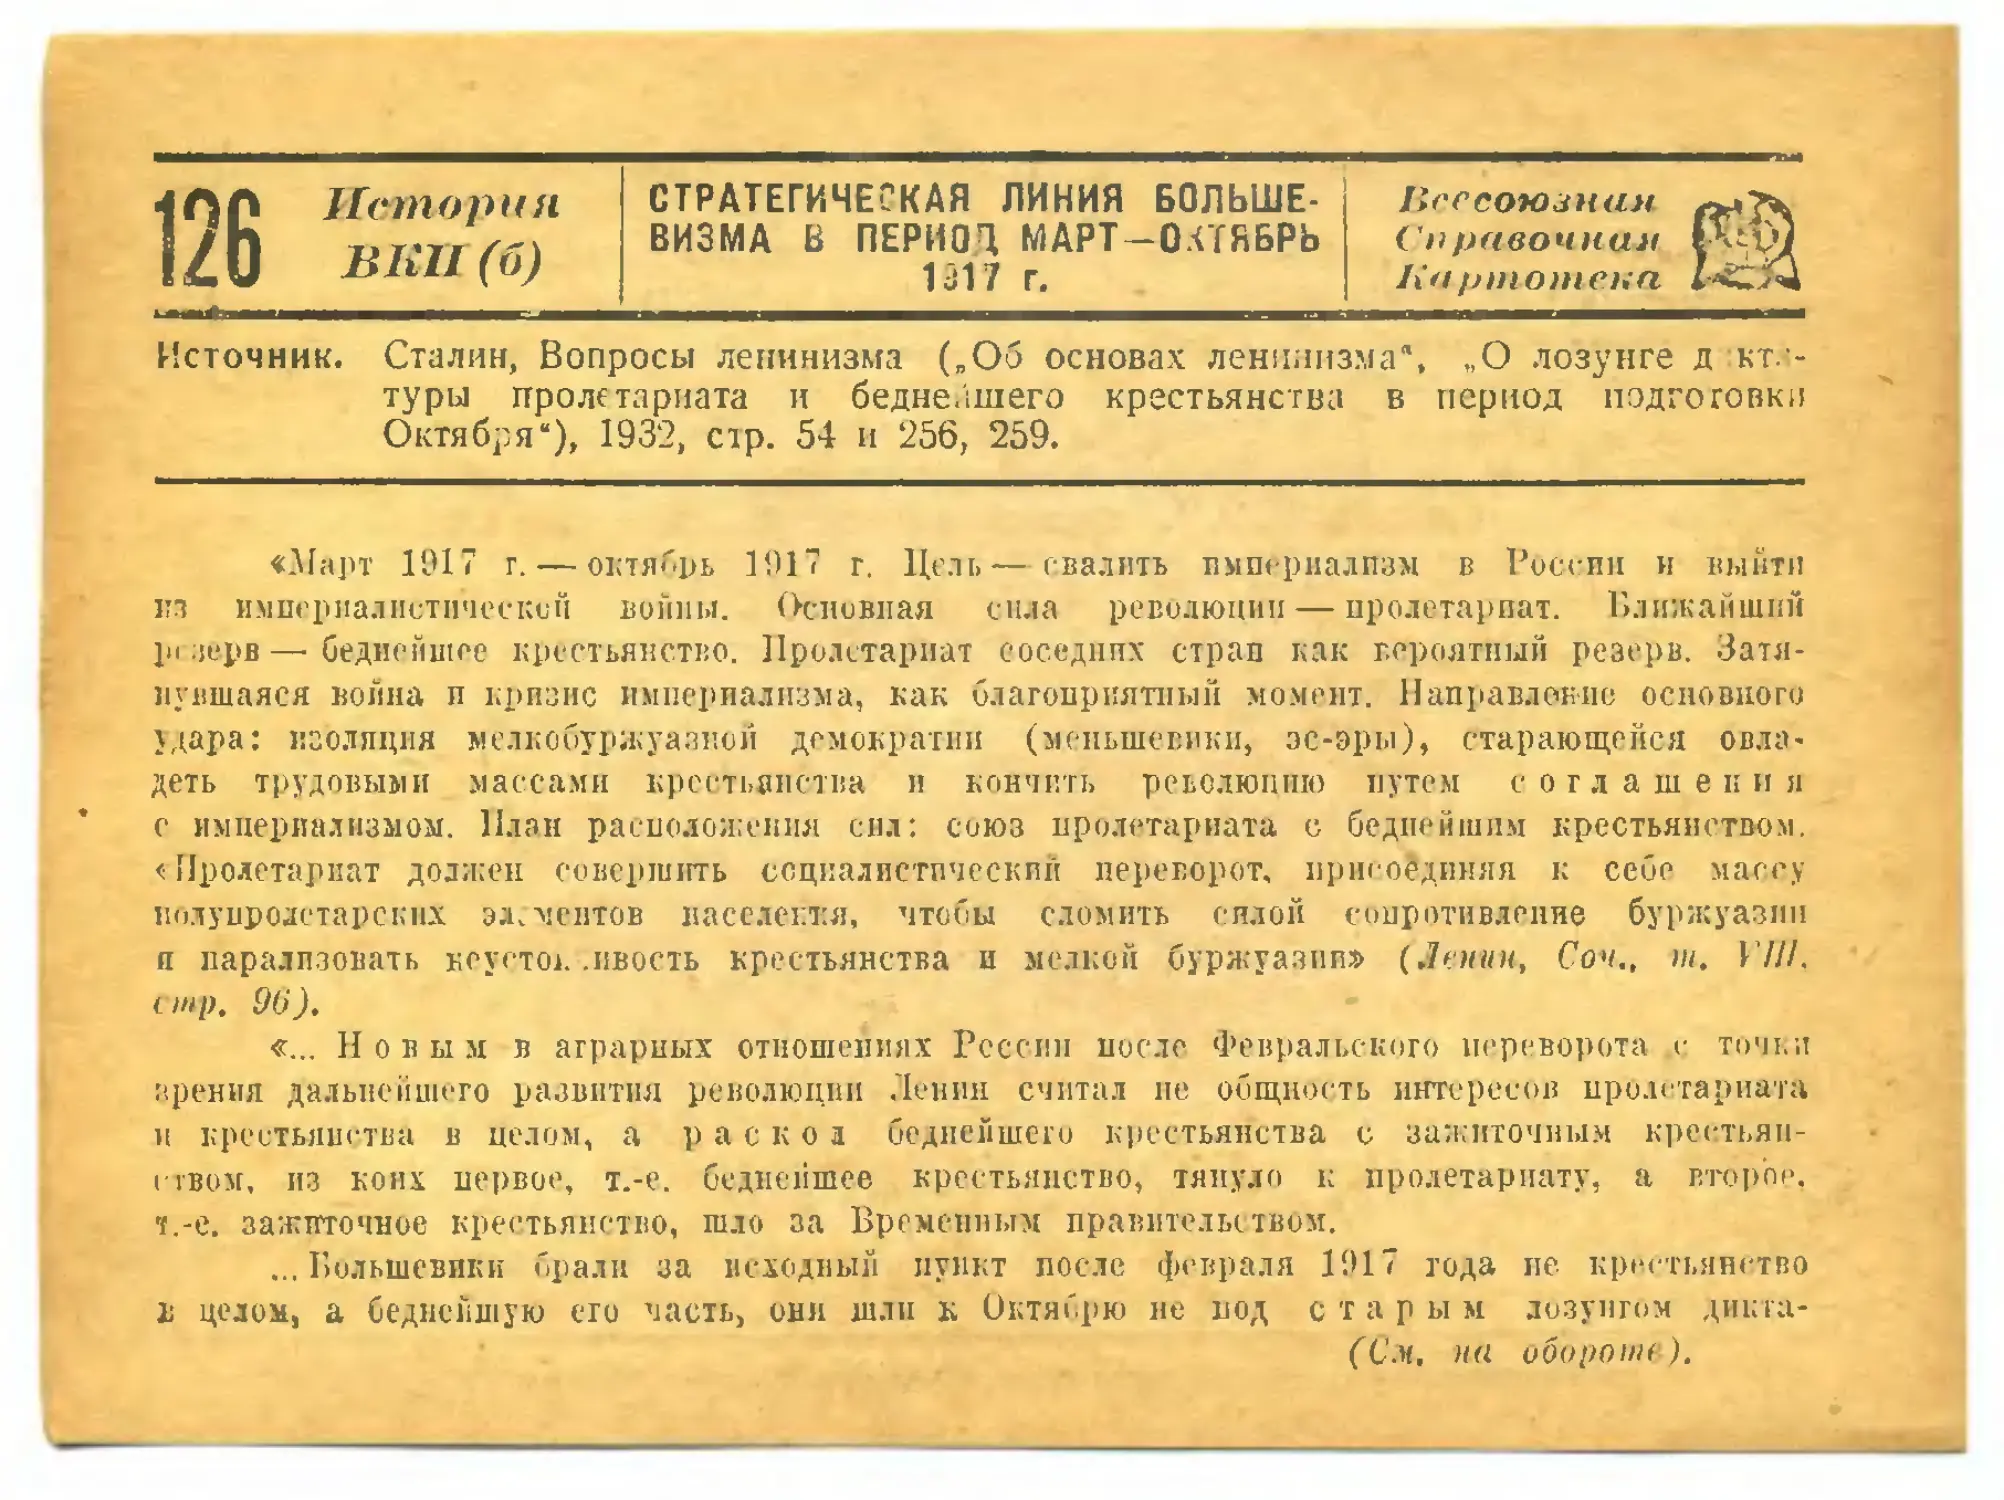 126. Стратегическая линия большевизма в период март—октябрь 1917 г.